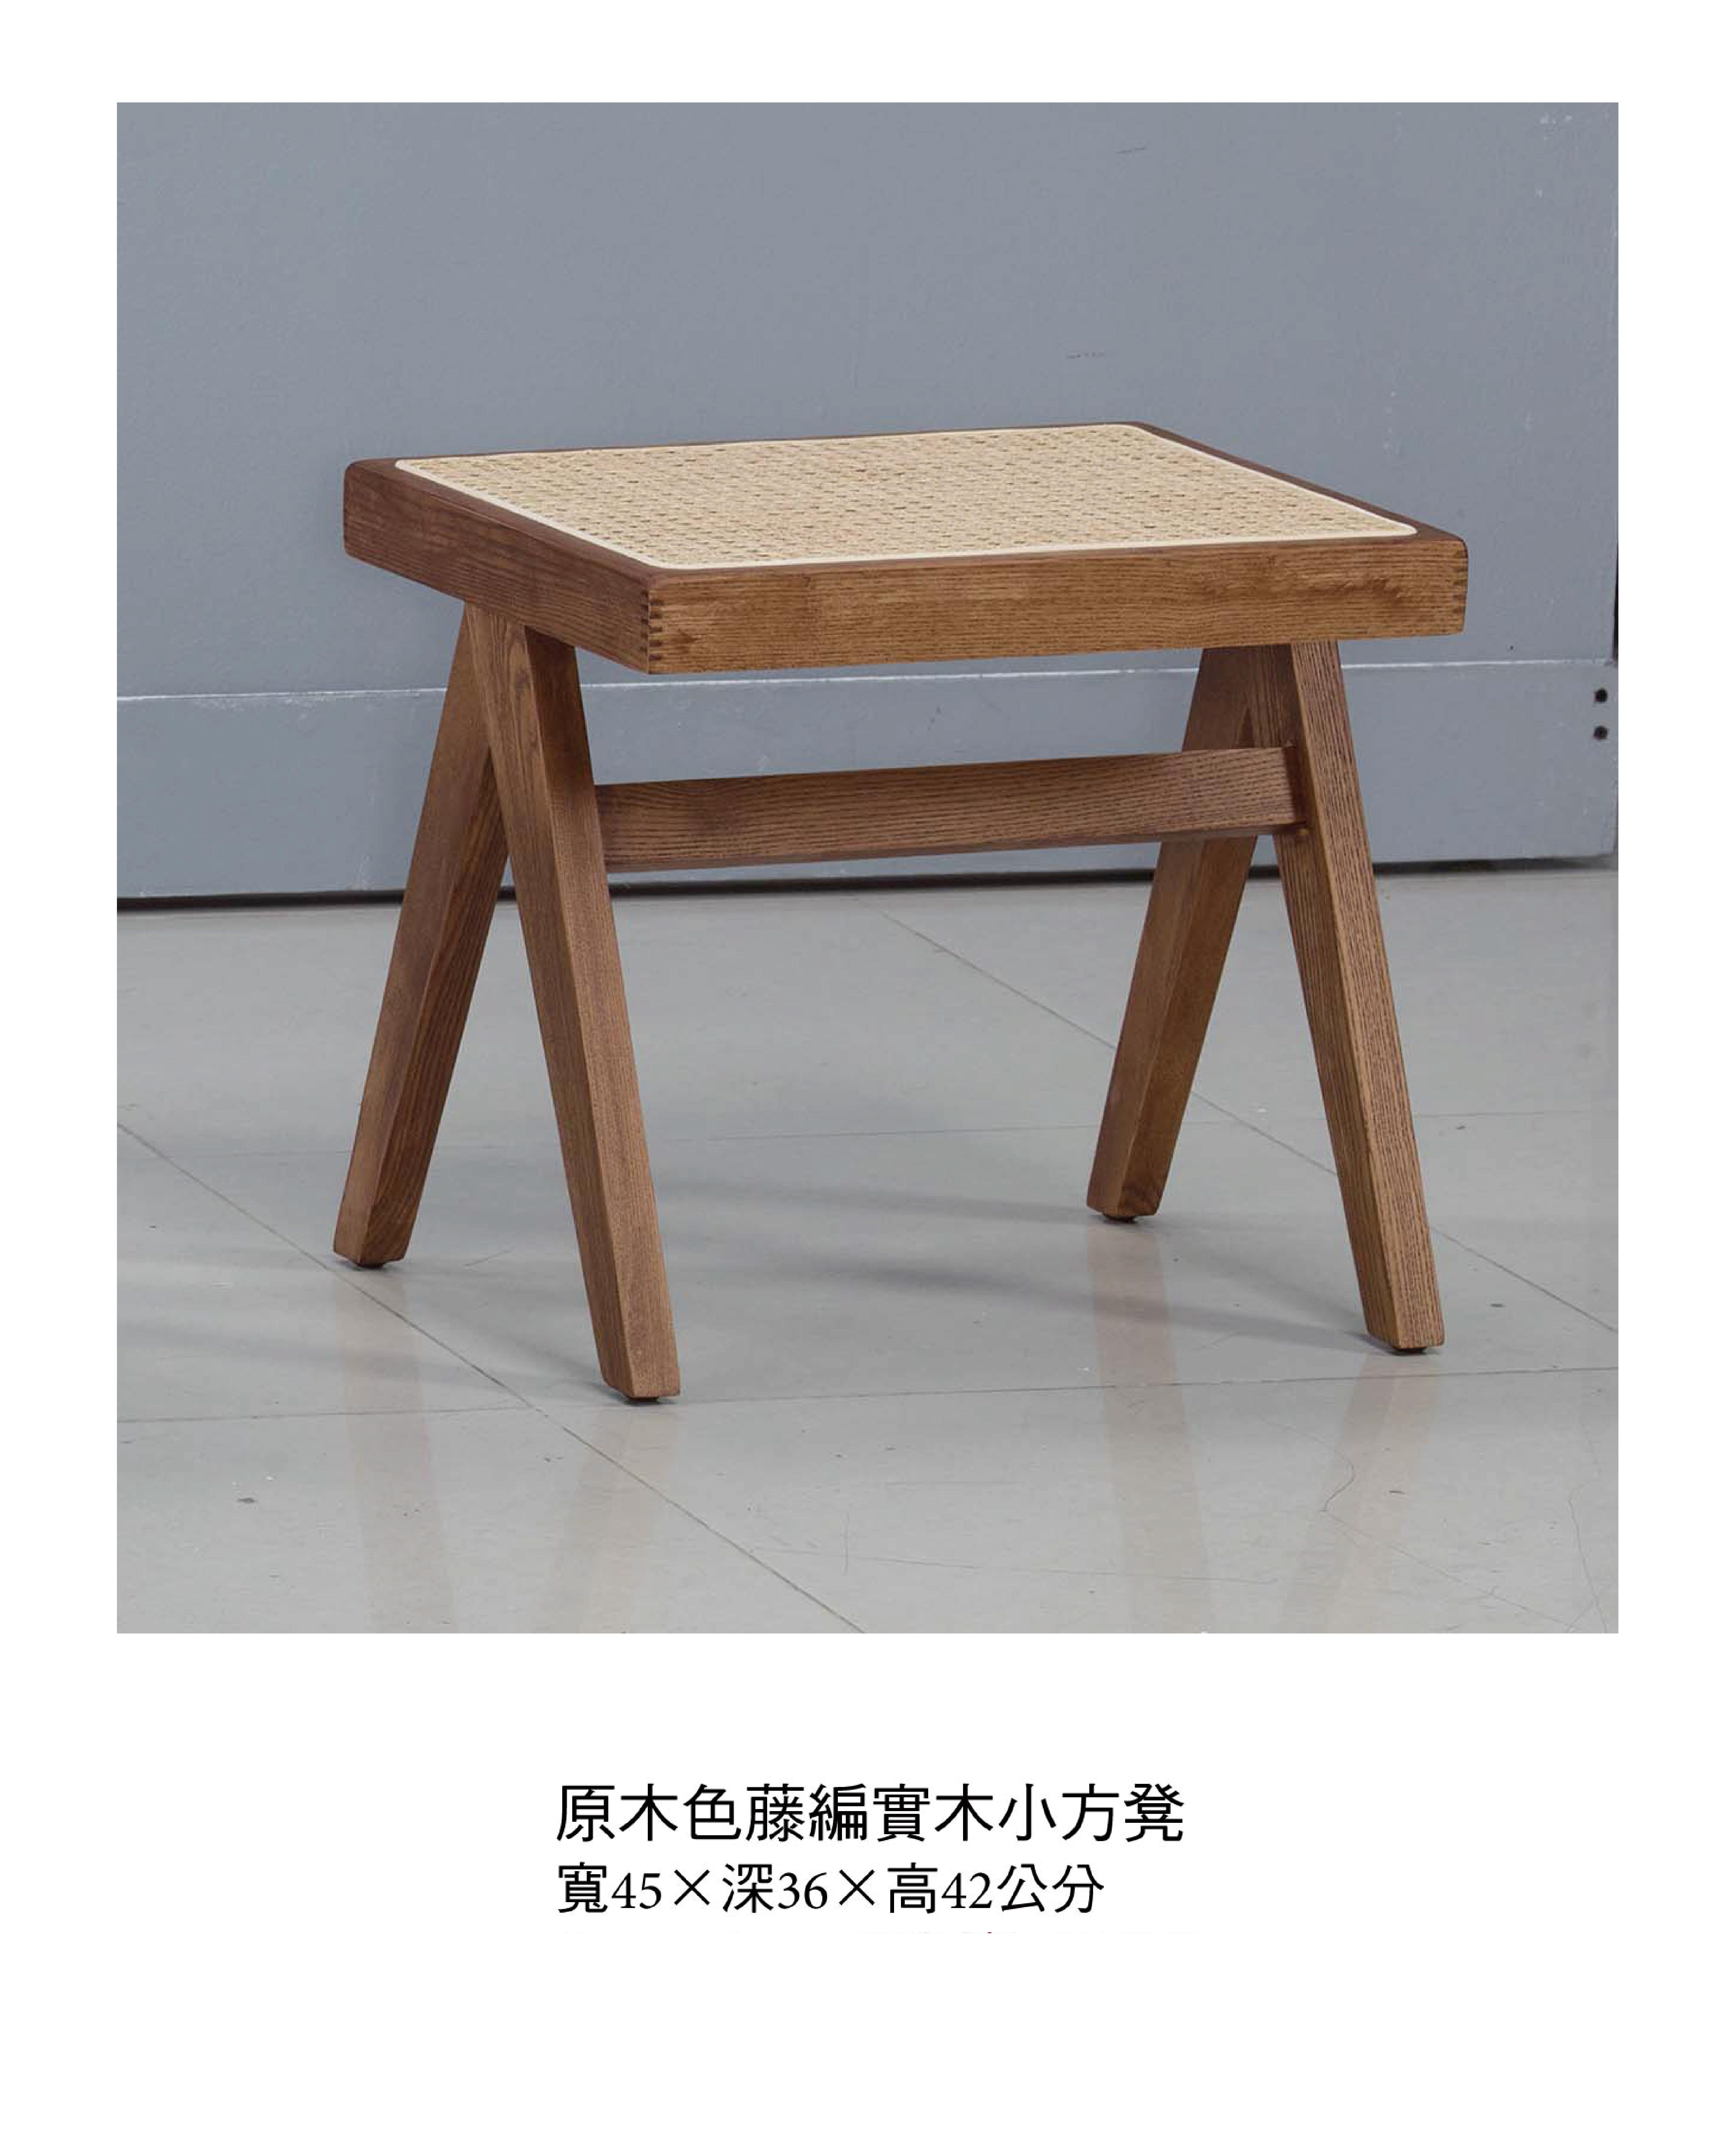 日式淺胡桃色藤編實木小方凳